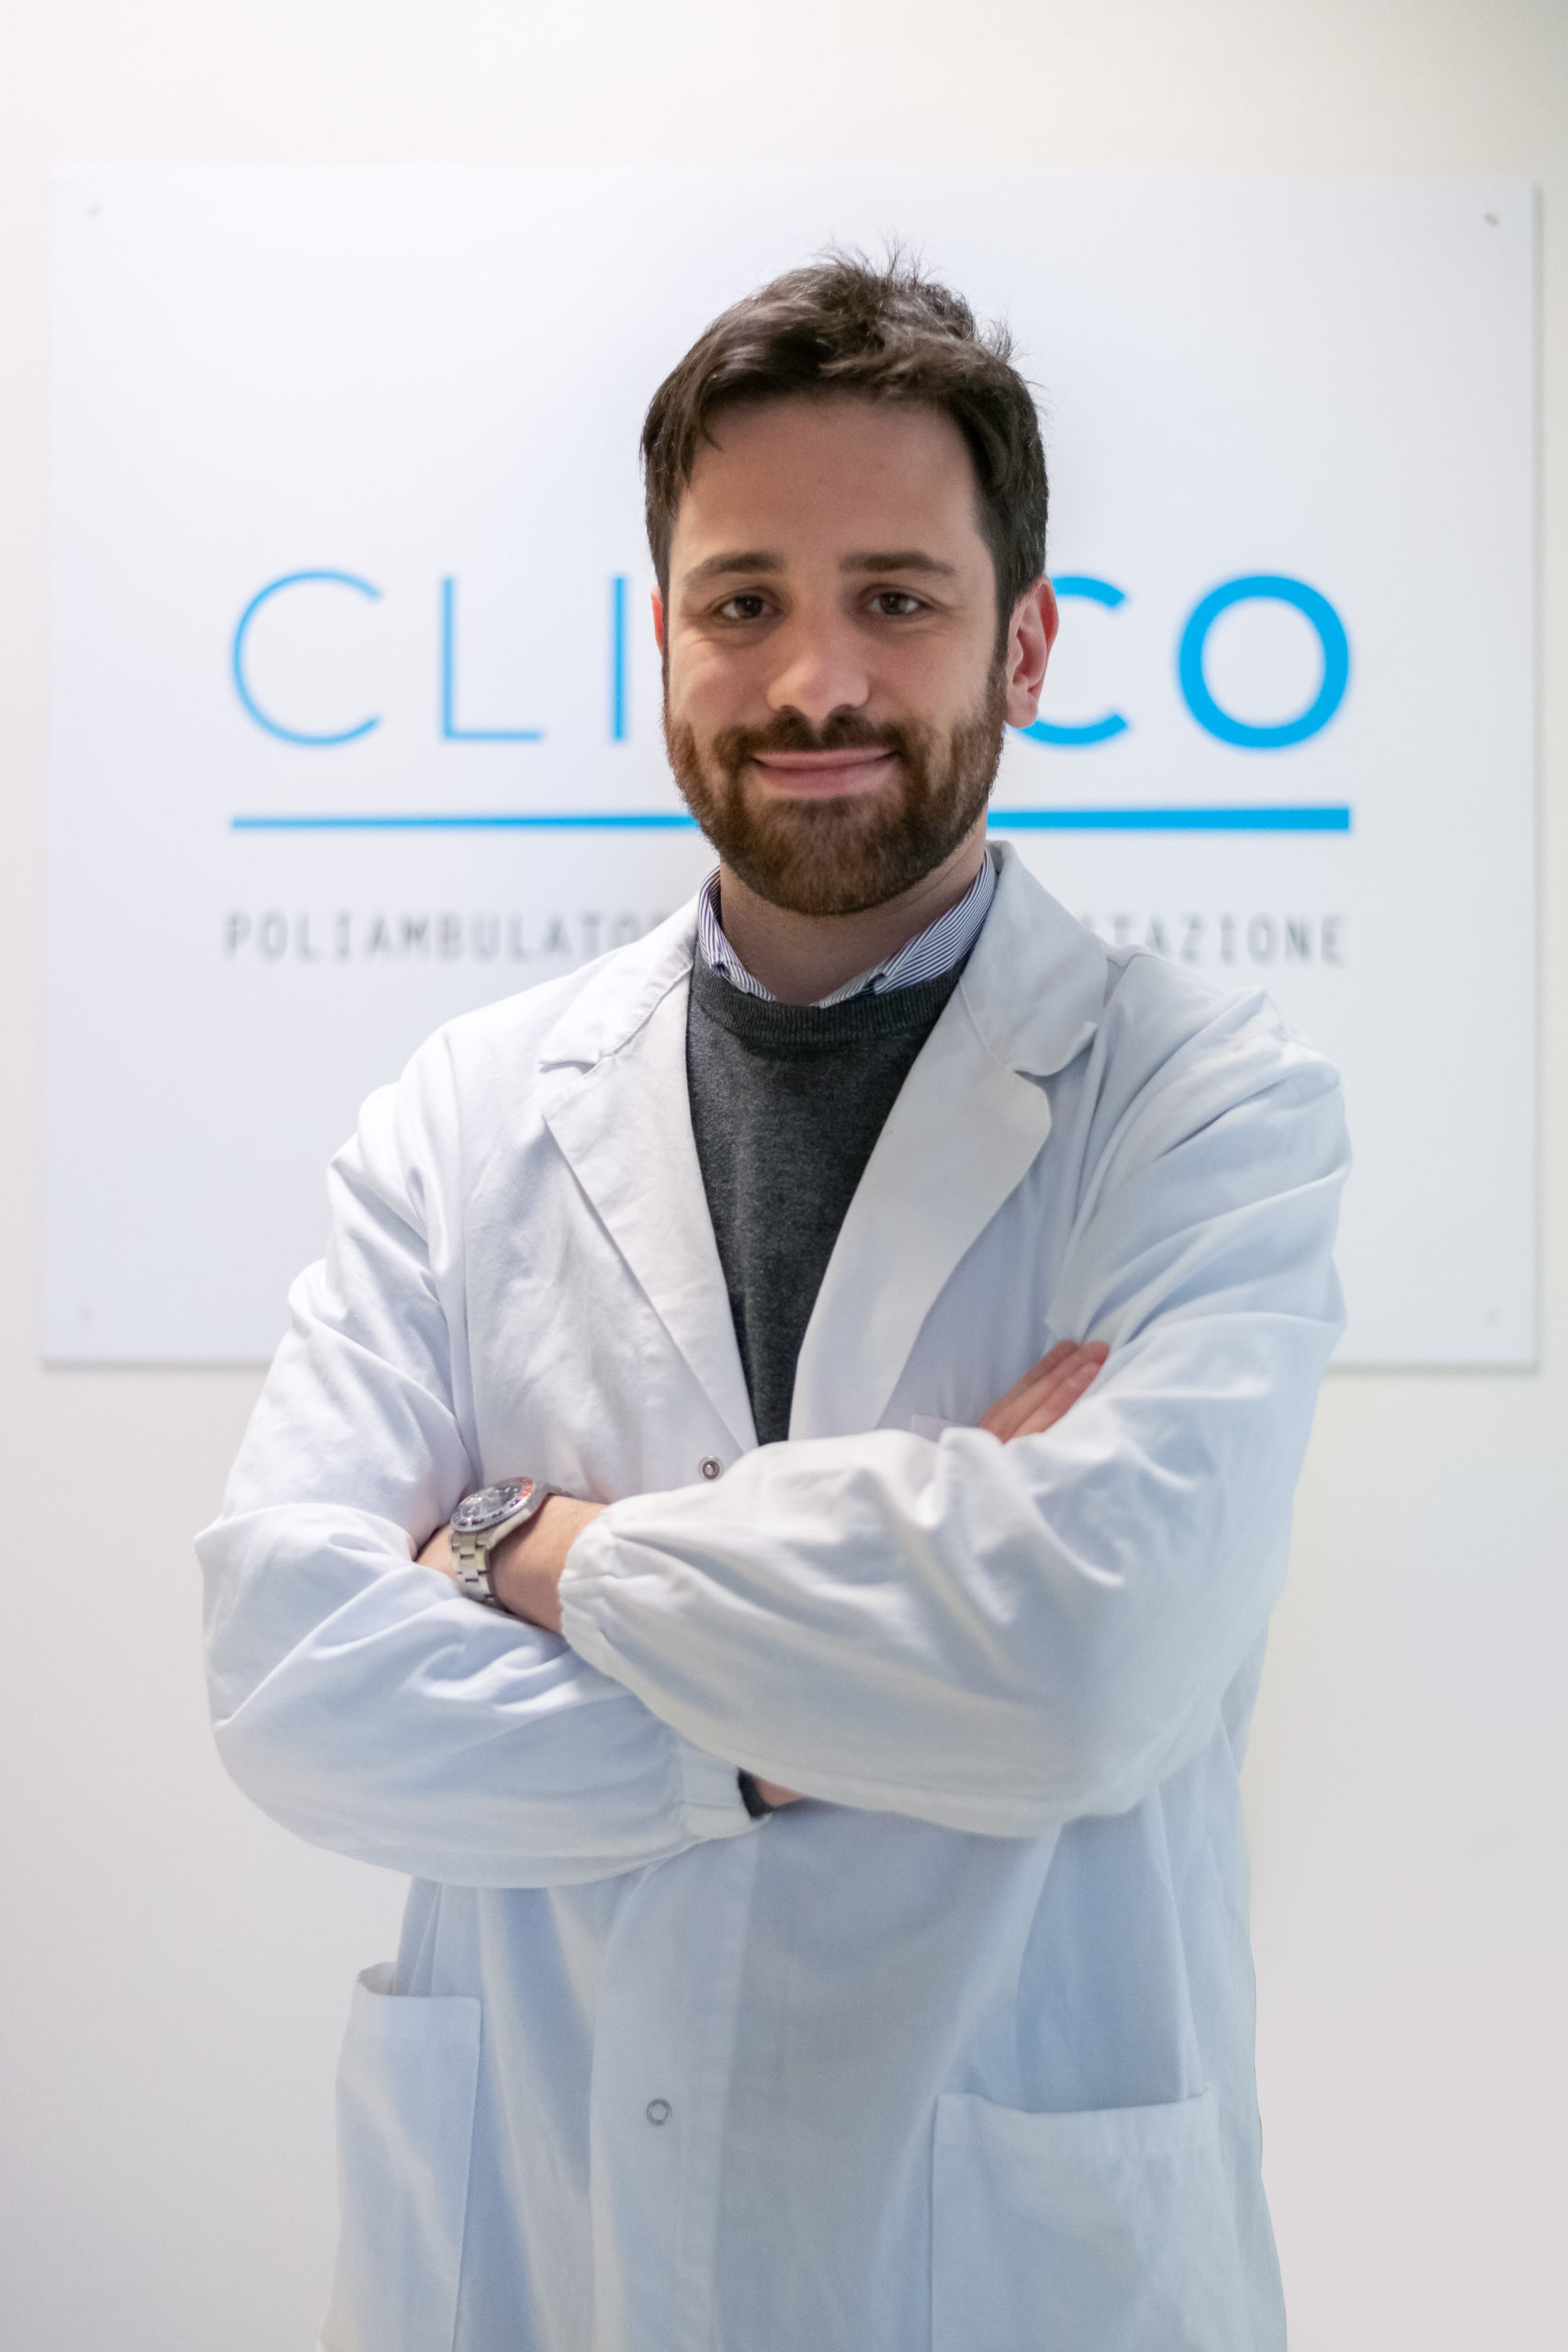 Dr. Carretta Alessandro